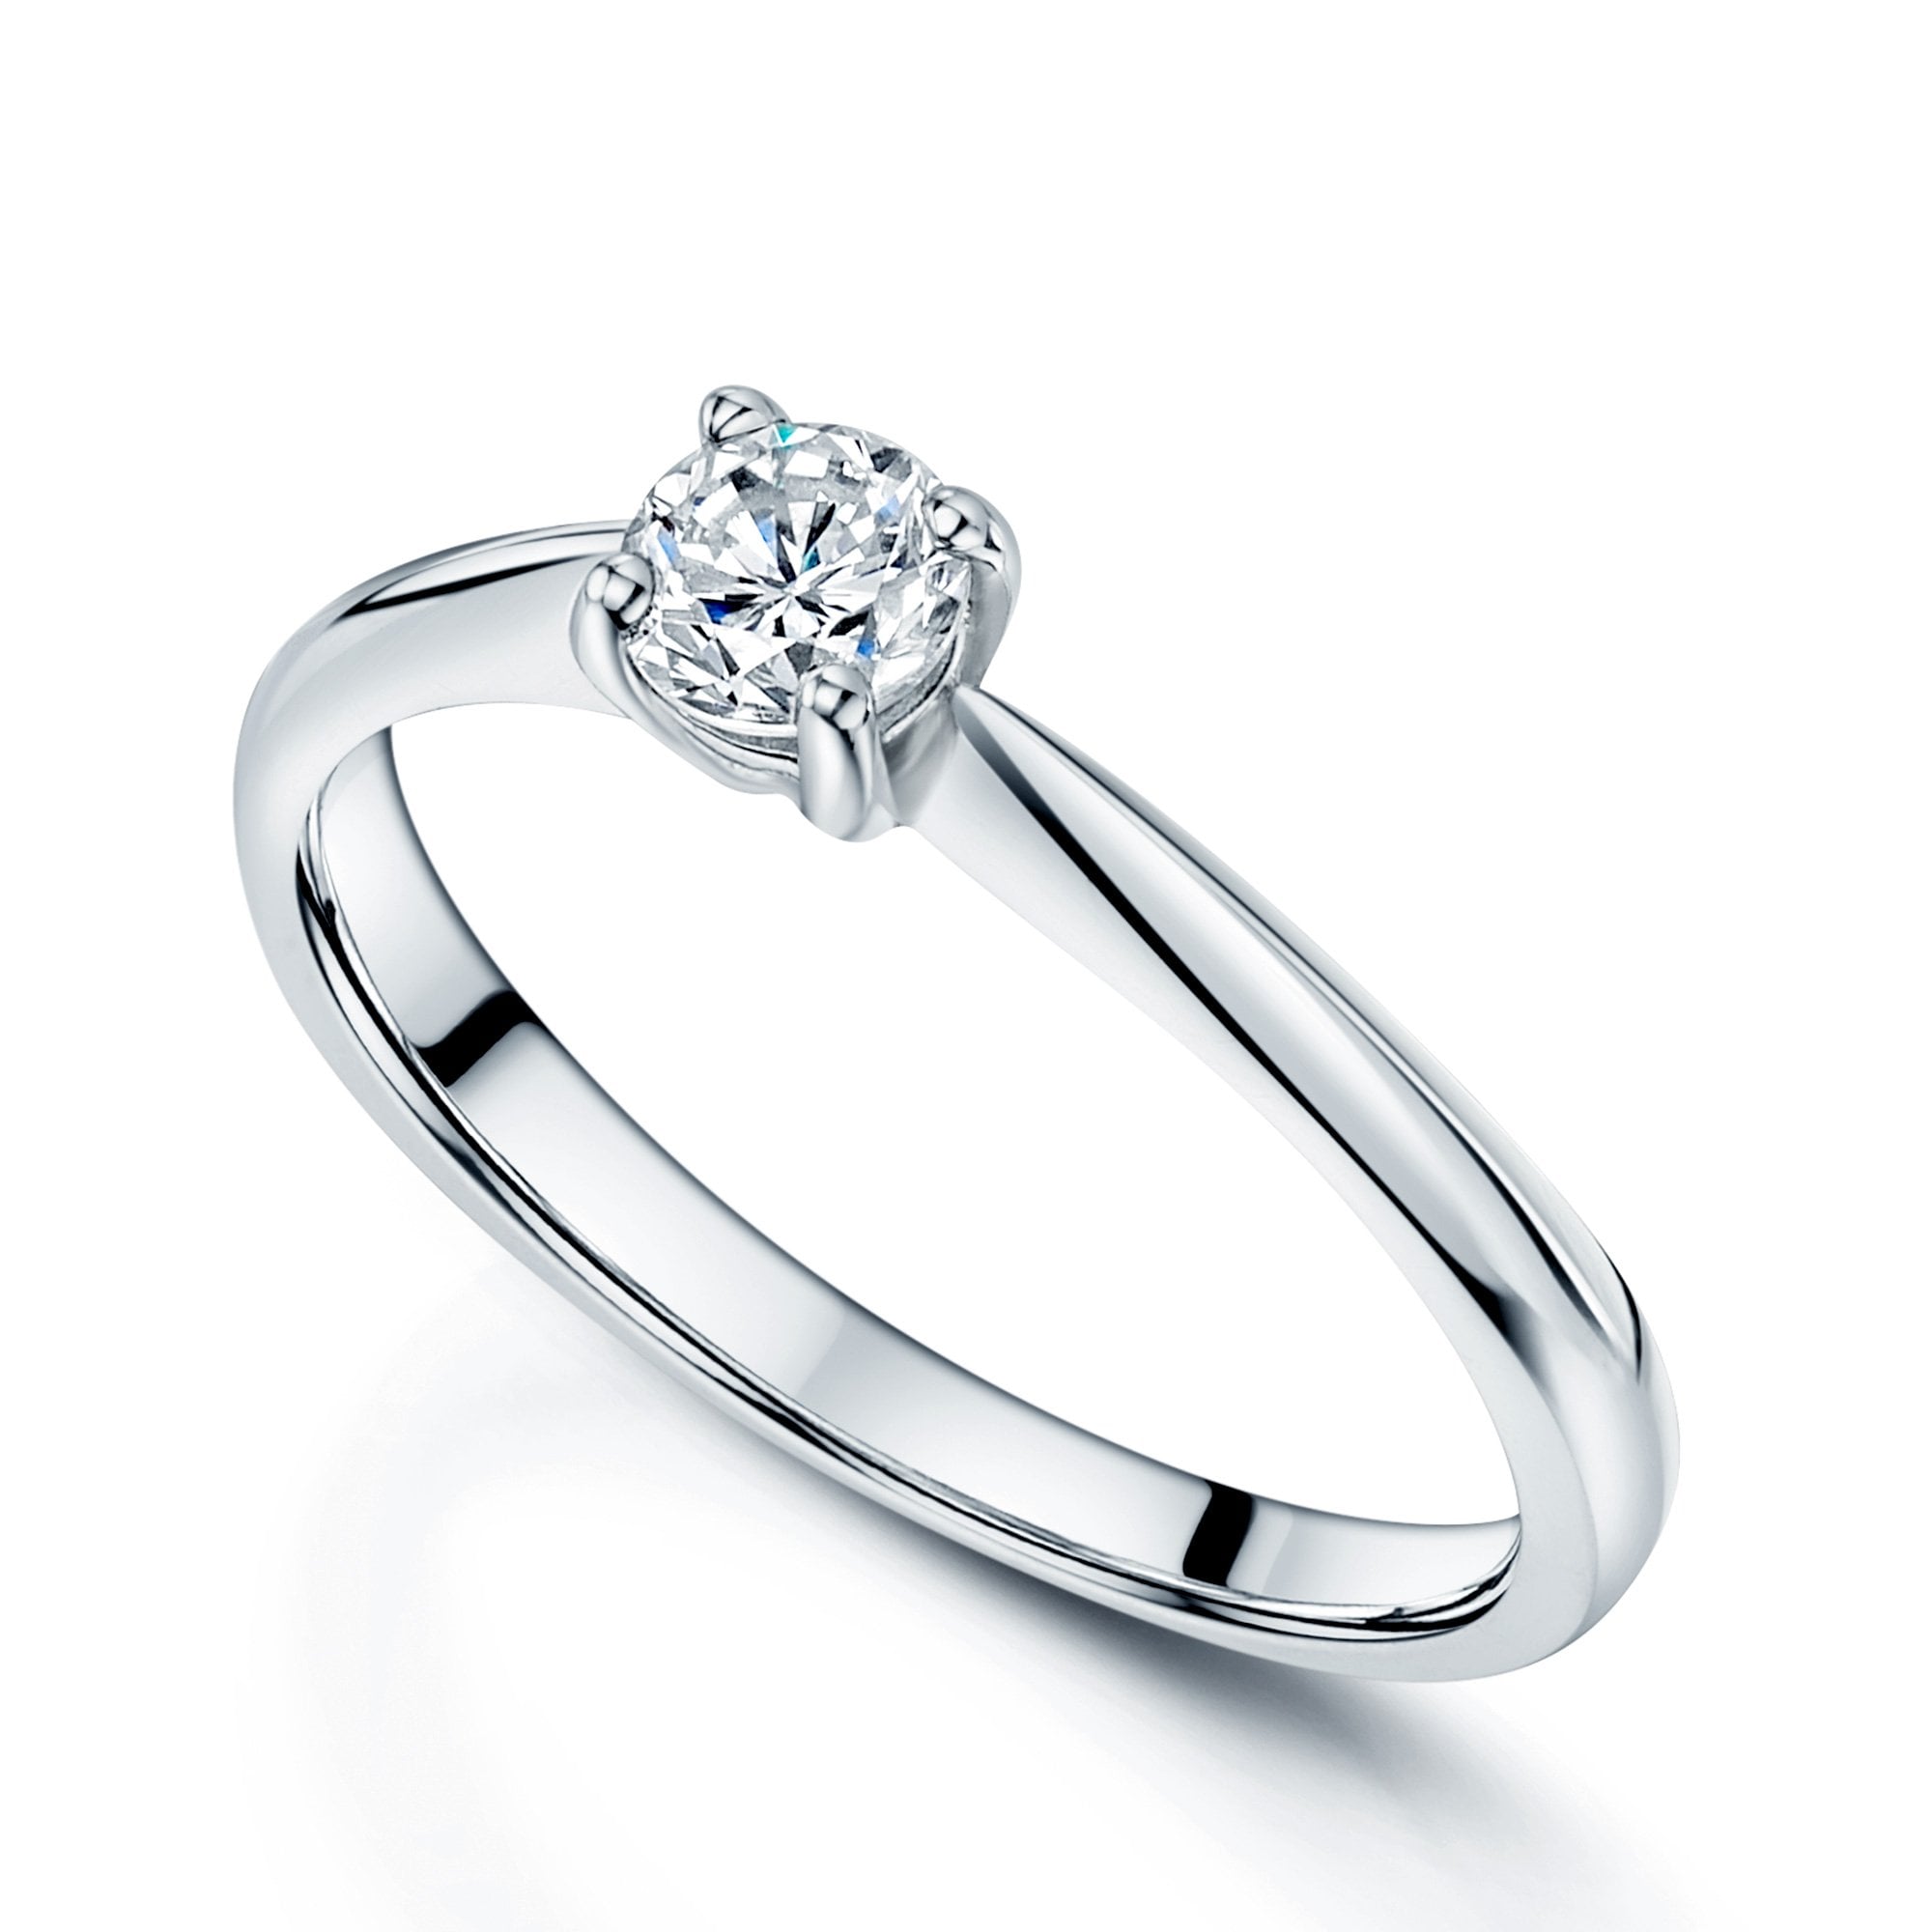 Platinum GIA Certificated 0.36 Carat Round Brilliant Cut Diamond Engagement Ring